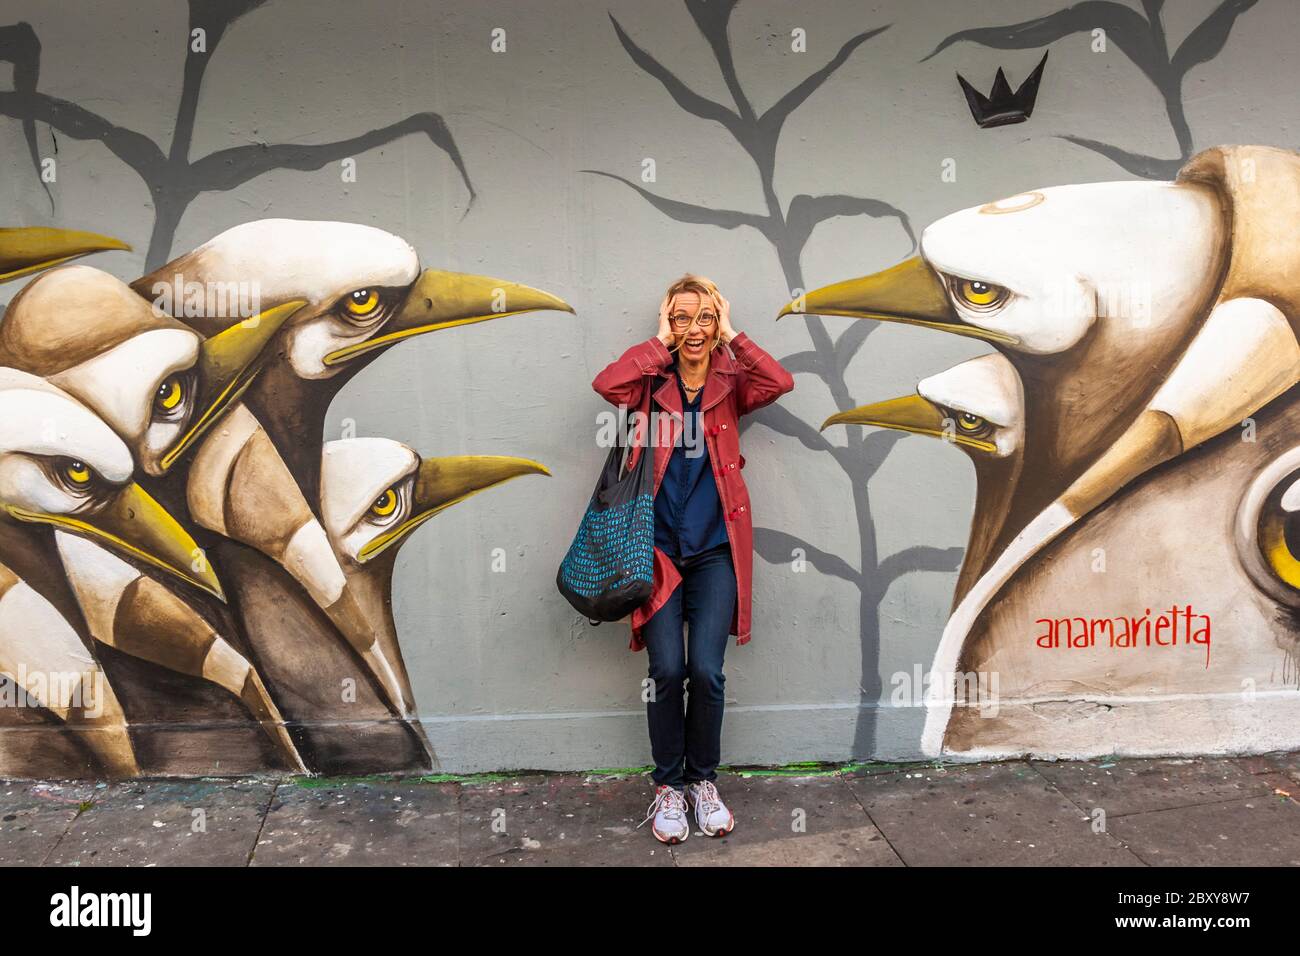 Attacco di becco e fobia degli uccelli a Londra. Una giovane donna di fronte a un murale di pinguini che la minacciano con le loro perle. Il dipinto è firmato dall'artista Anamarietta. Street Art in Royal Borough di Kensington e Chelsea, Inghilterra Foto Stock